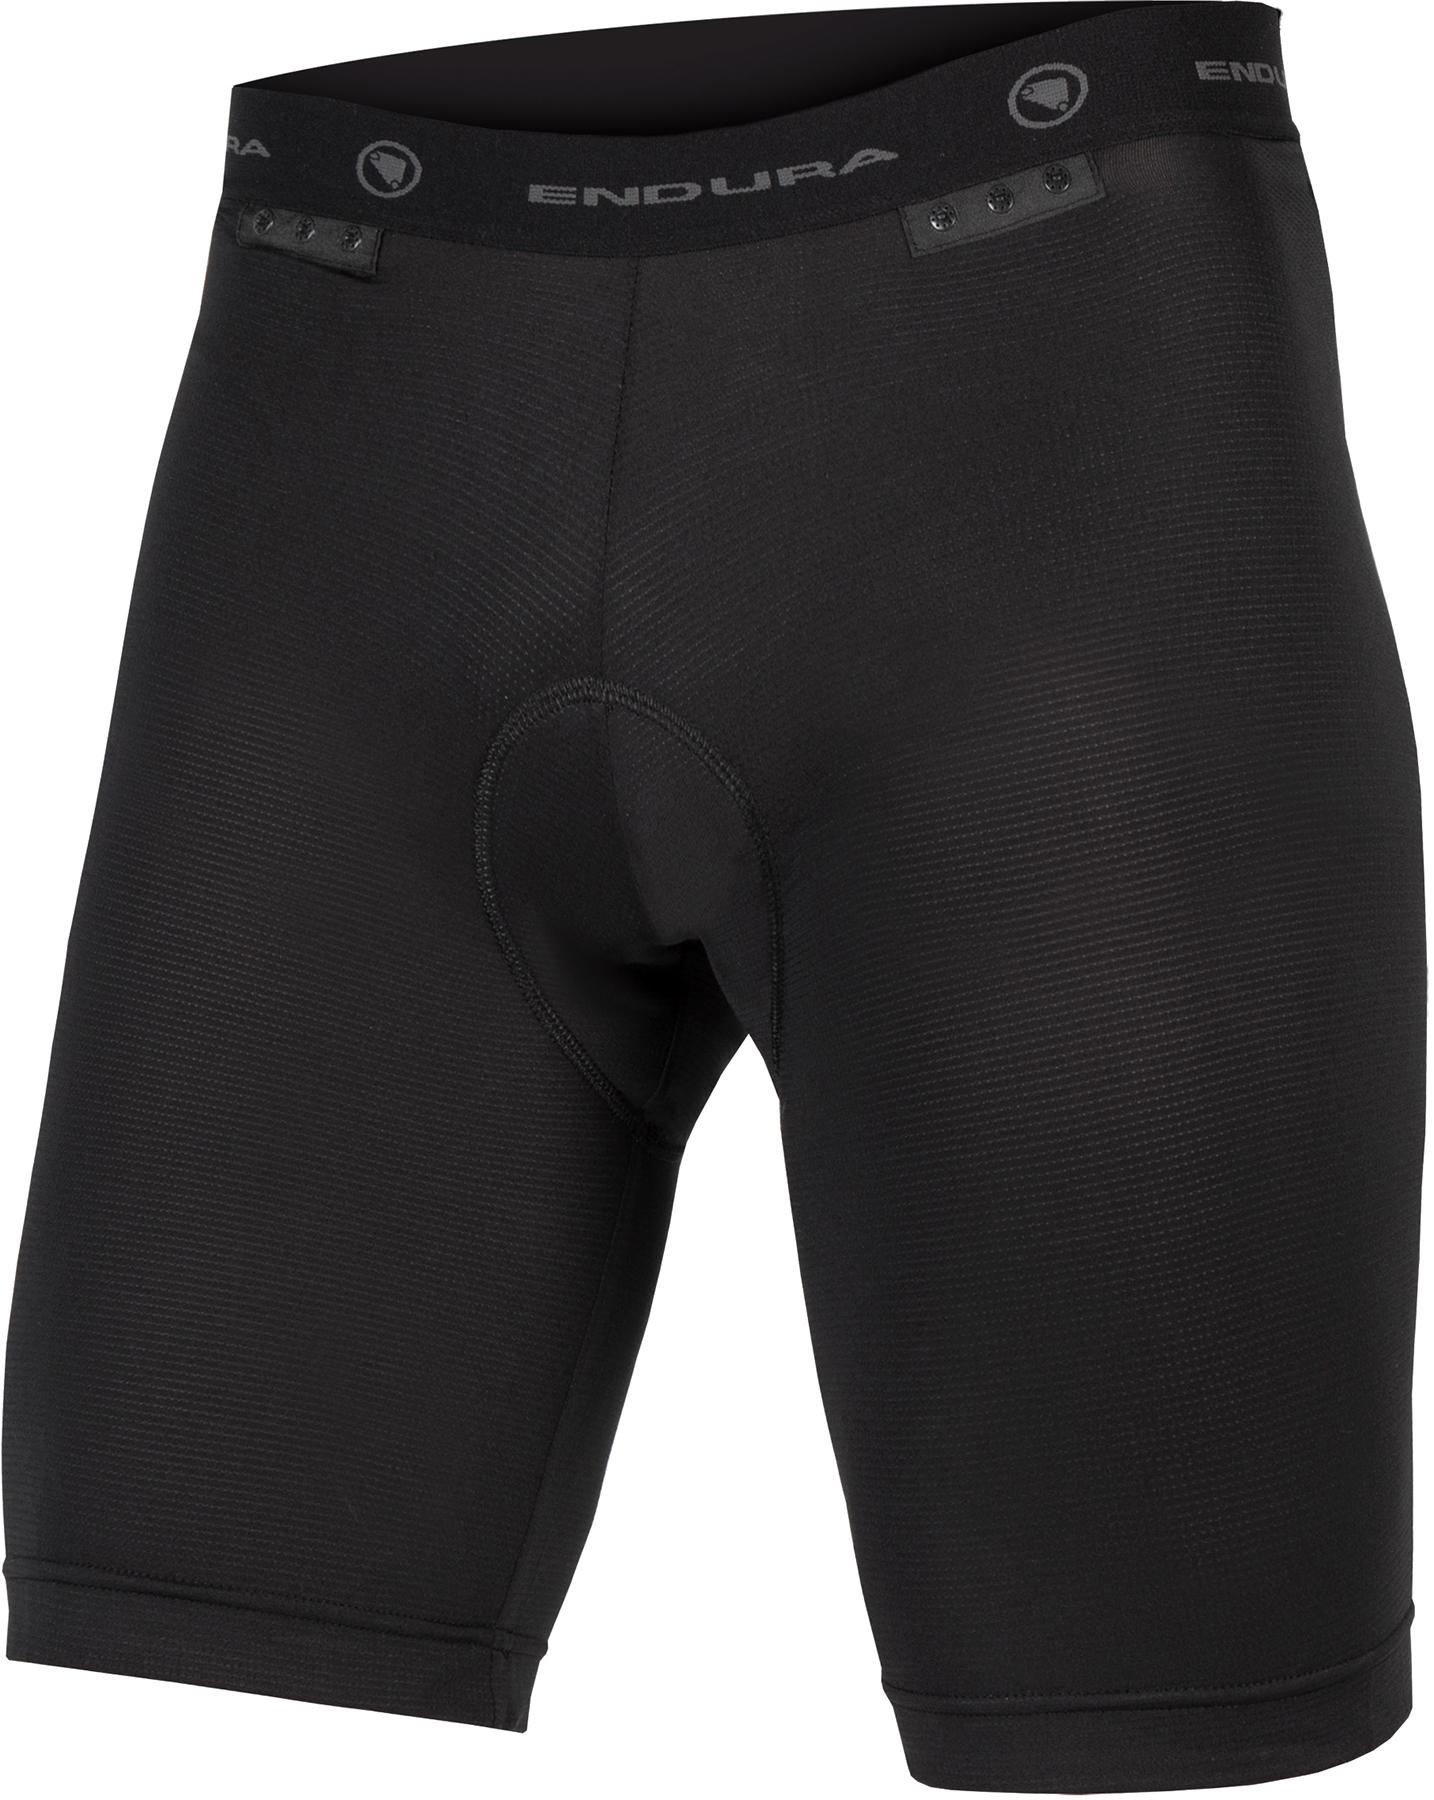 Endura Padded Clickfast Liner Shorts  Black